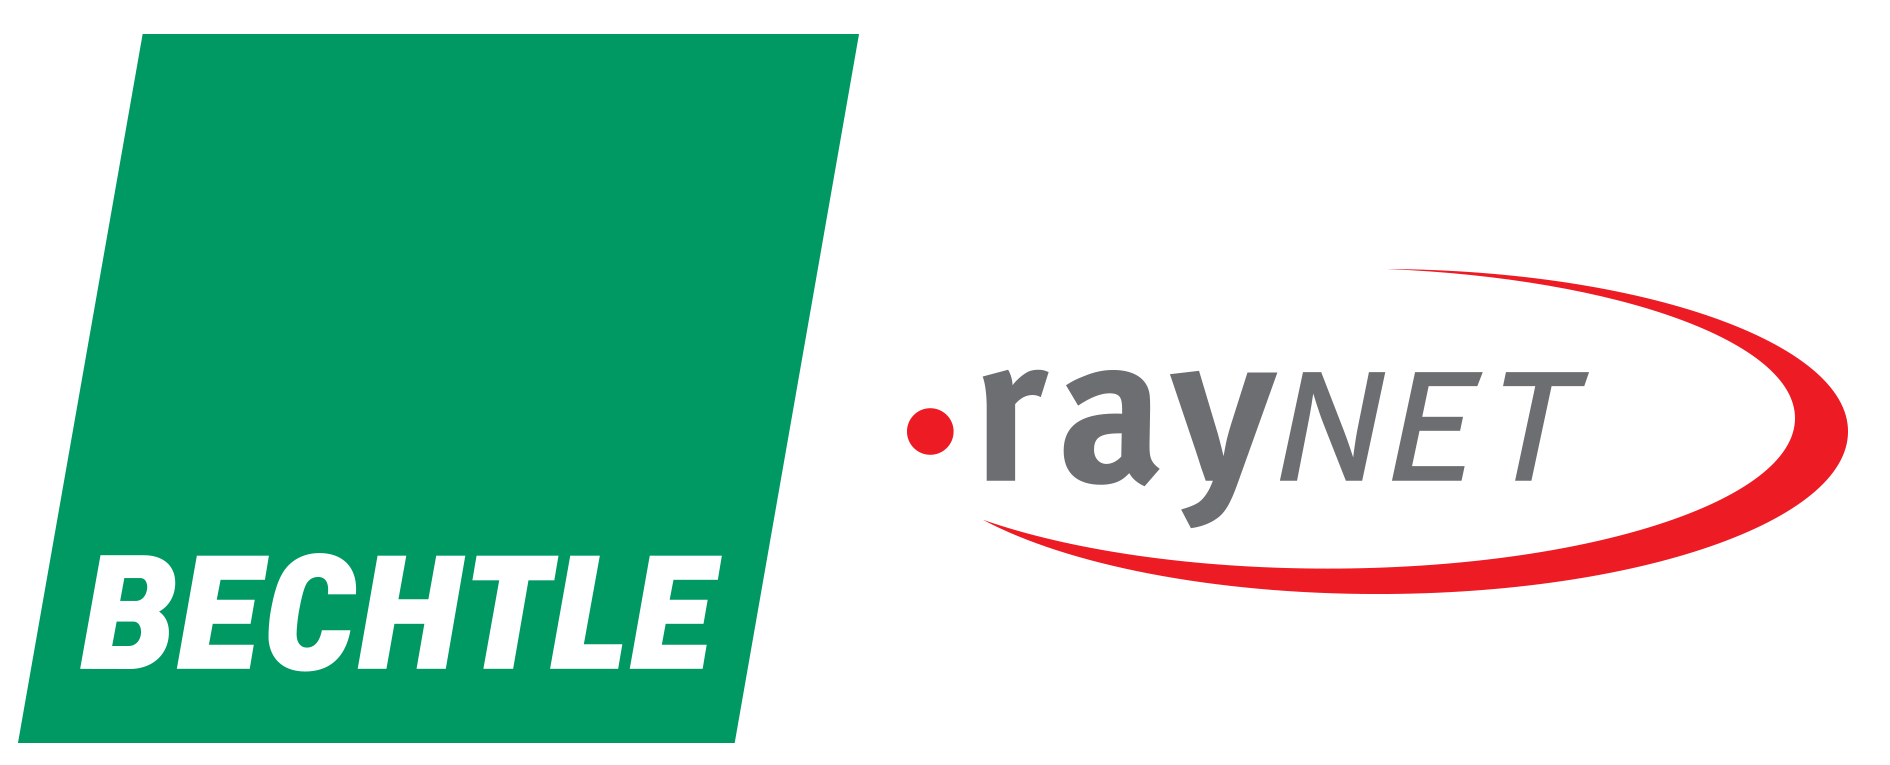 Bechtle Logo - Raynet expands Bechtle's software packaging factory | Raynet GmbH